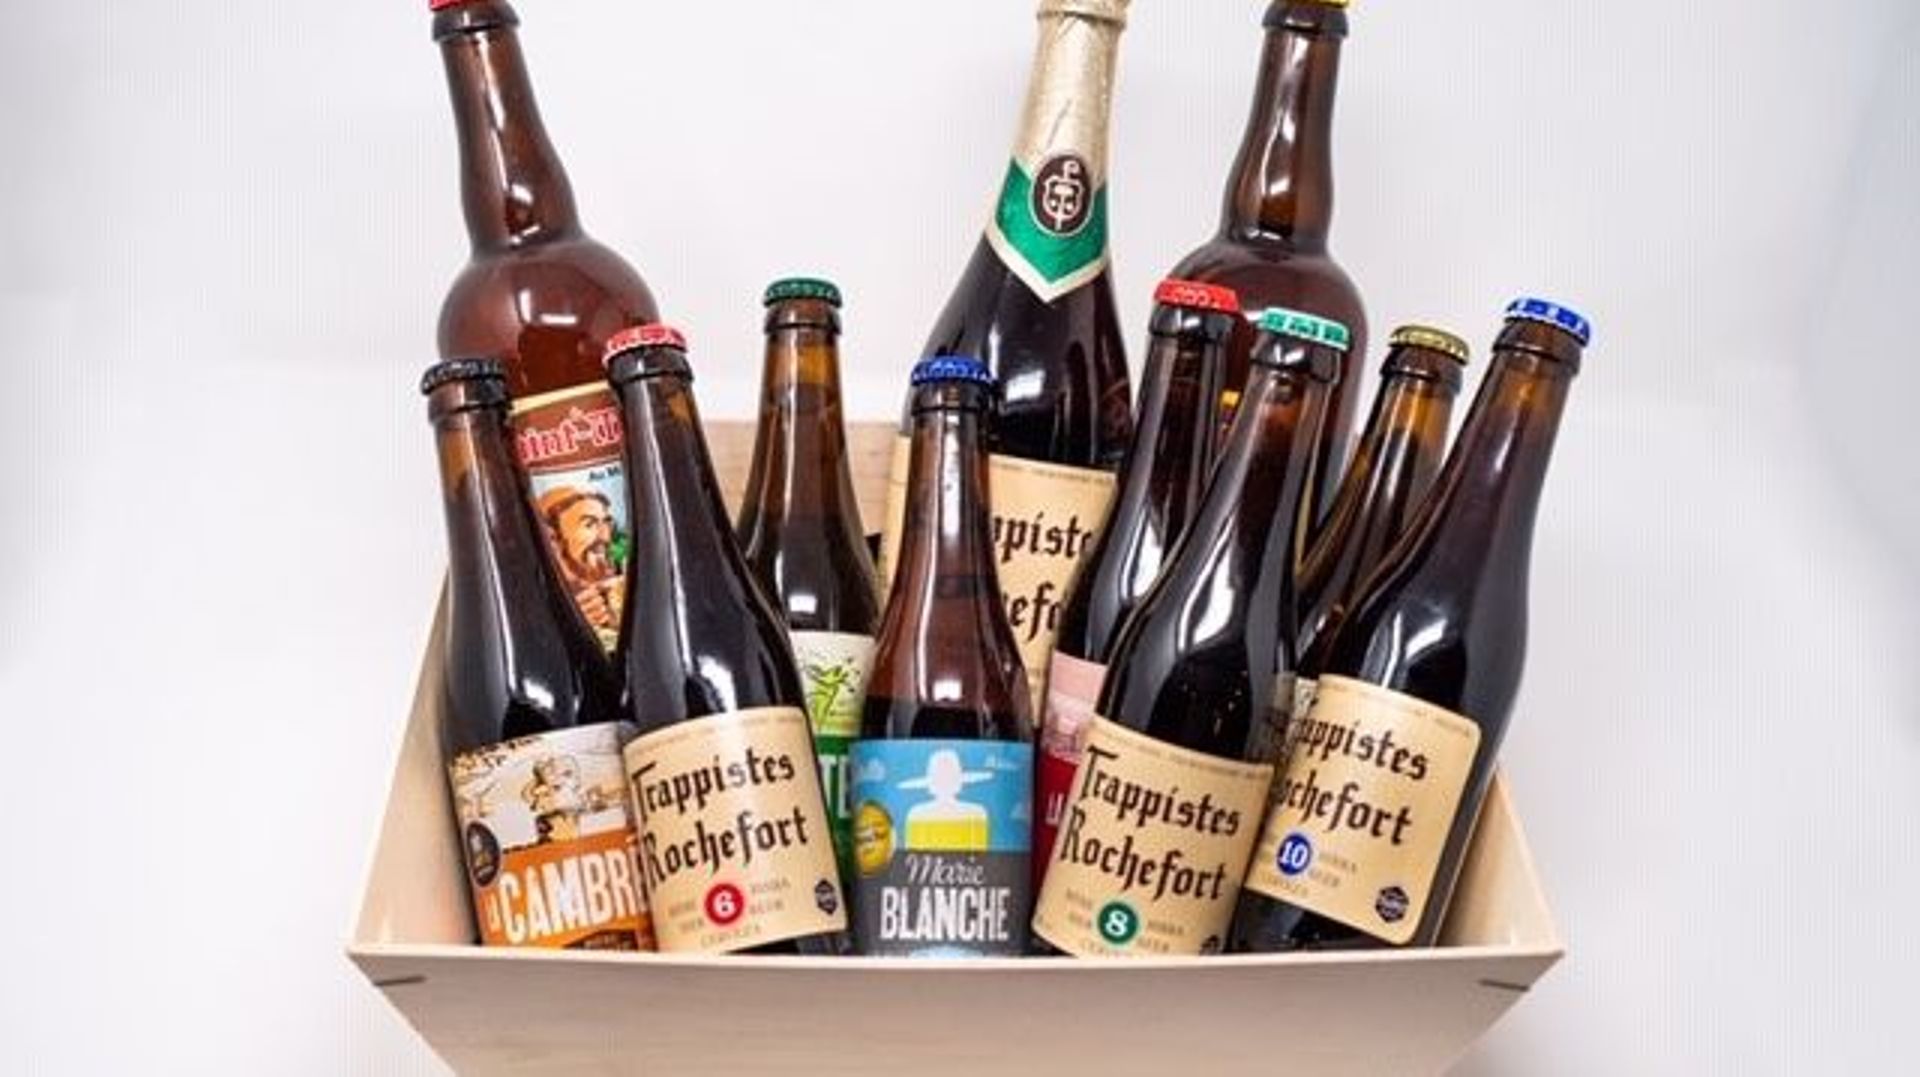 La trappiste de Rochefort se décline en 3 bières de 7,5 – 9,2 et 11,3% d’alcool.